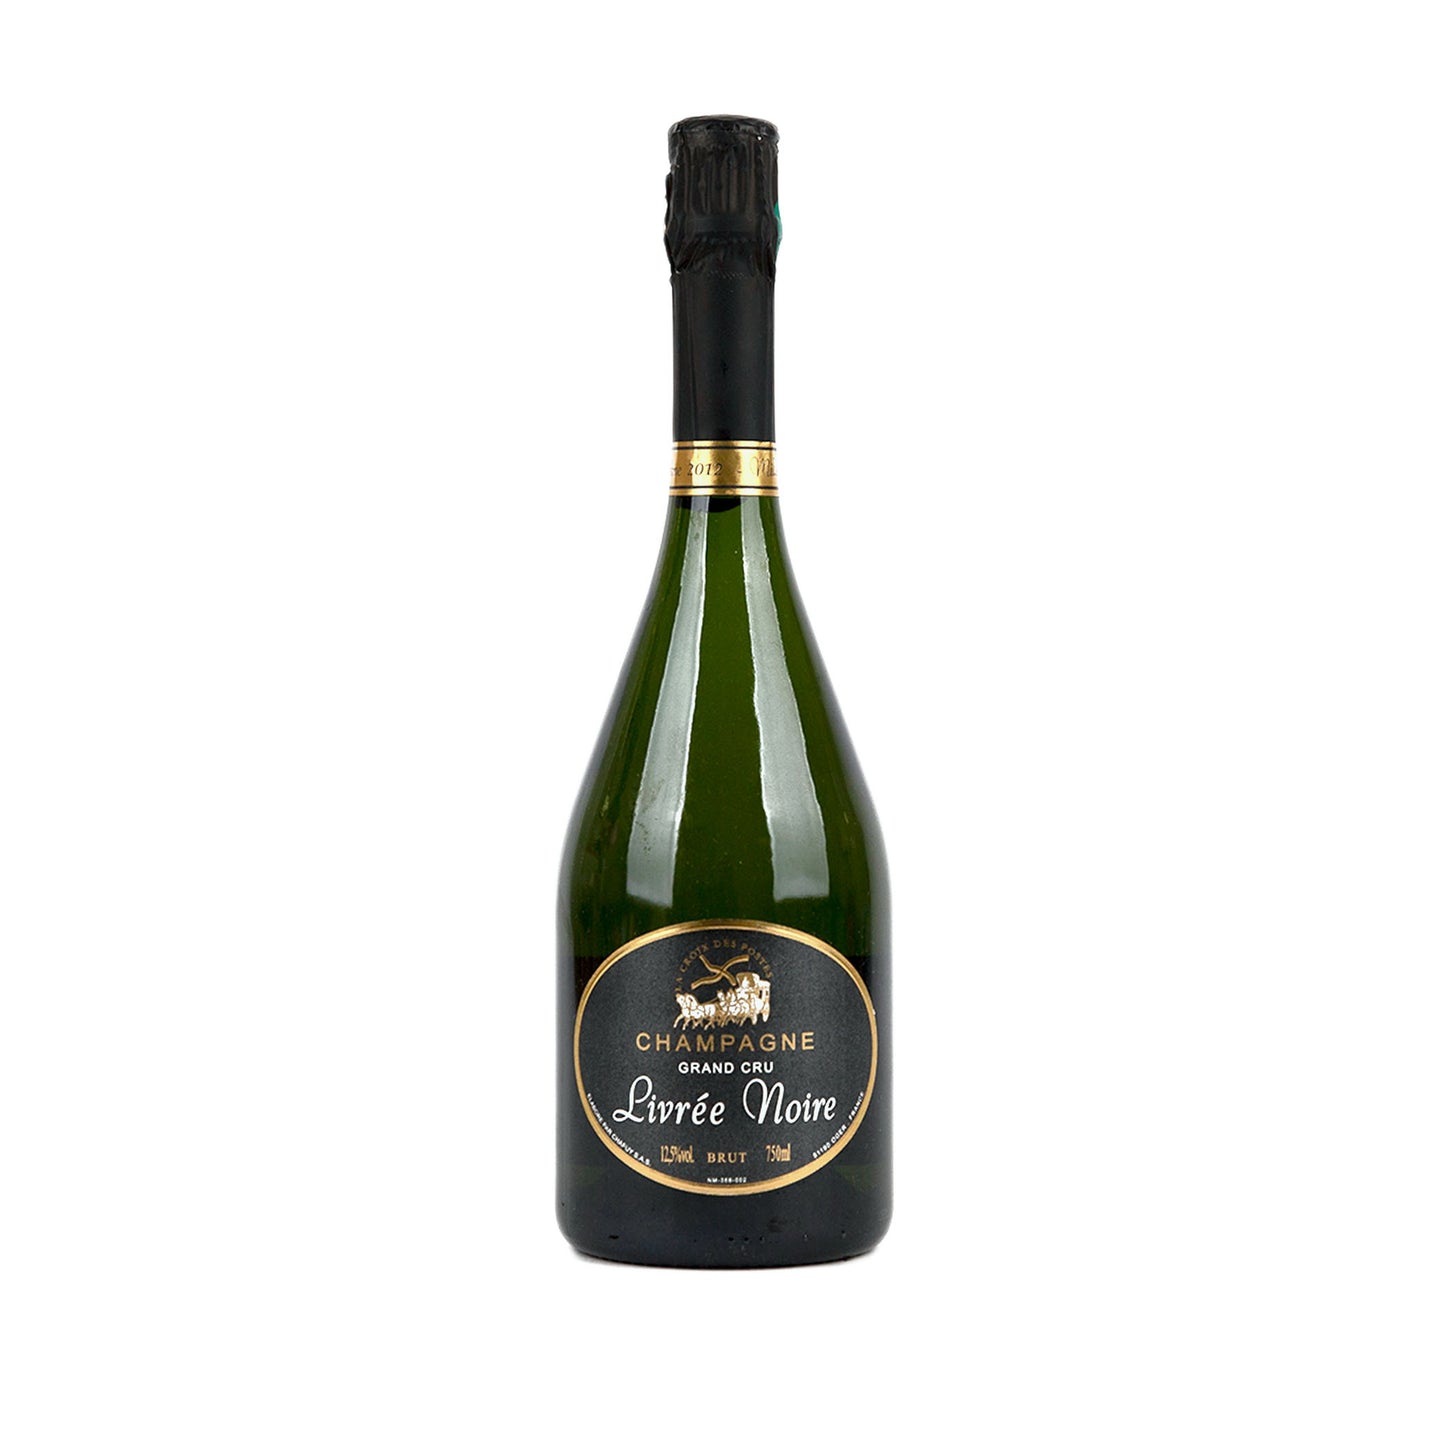 Champagne-Chapuy-Livre-Noire-Grand-Cru-emperor-champagne-front